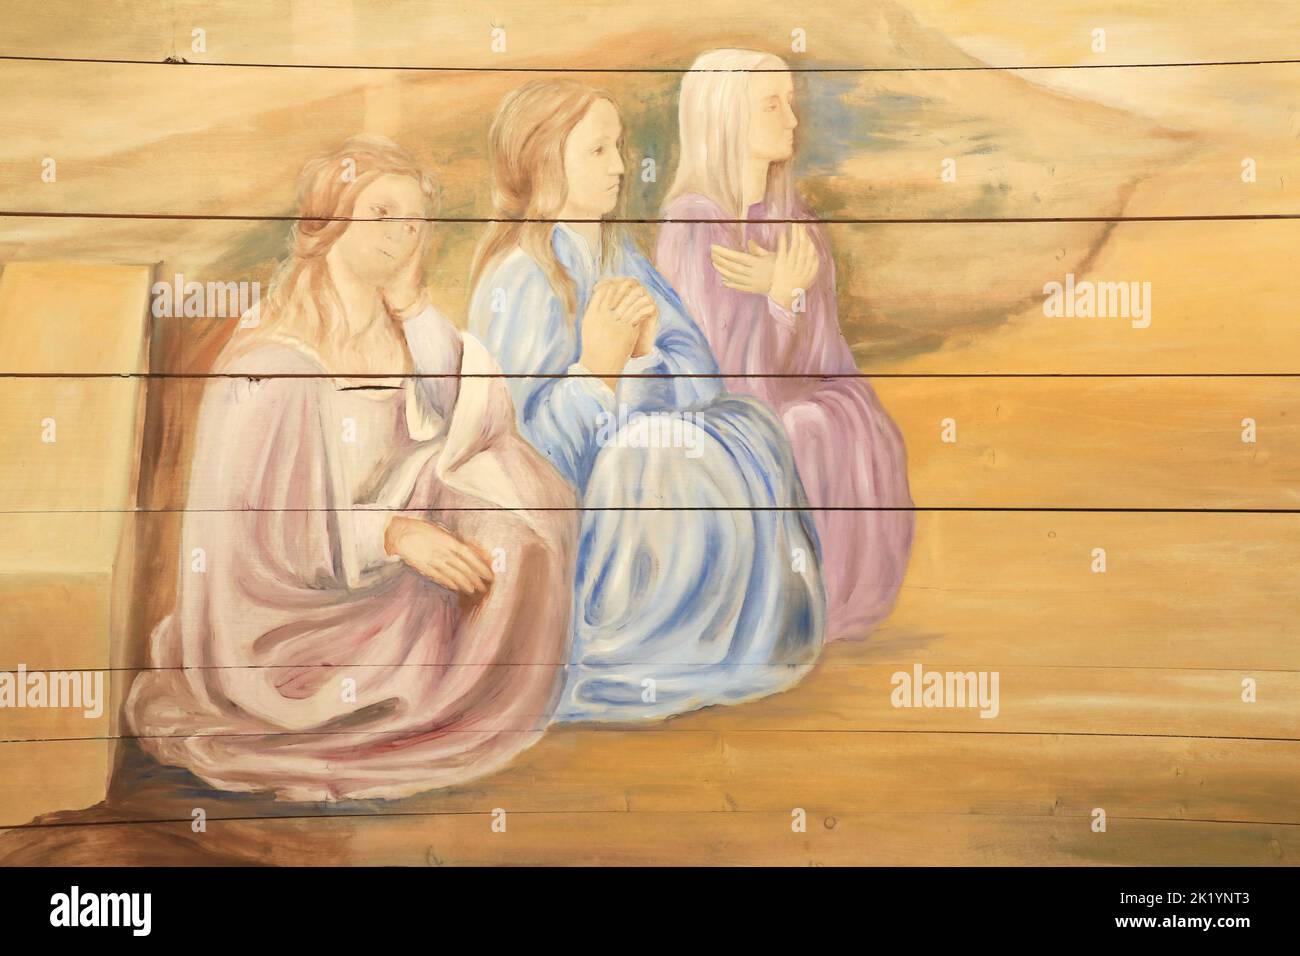 Saint-Nicolas, évêque de Myre, dote trois jeunes filles pauvres. Détails. Peinture murale restaurée par Edouard Borga. Eglise Saint-Nicolas. Combloux. Stock Photo